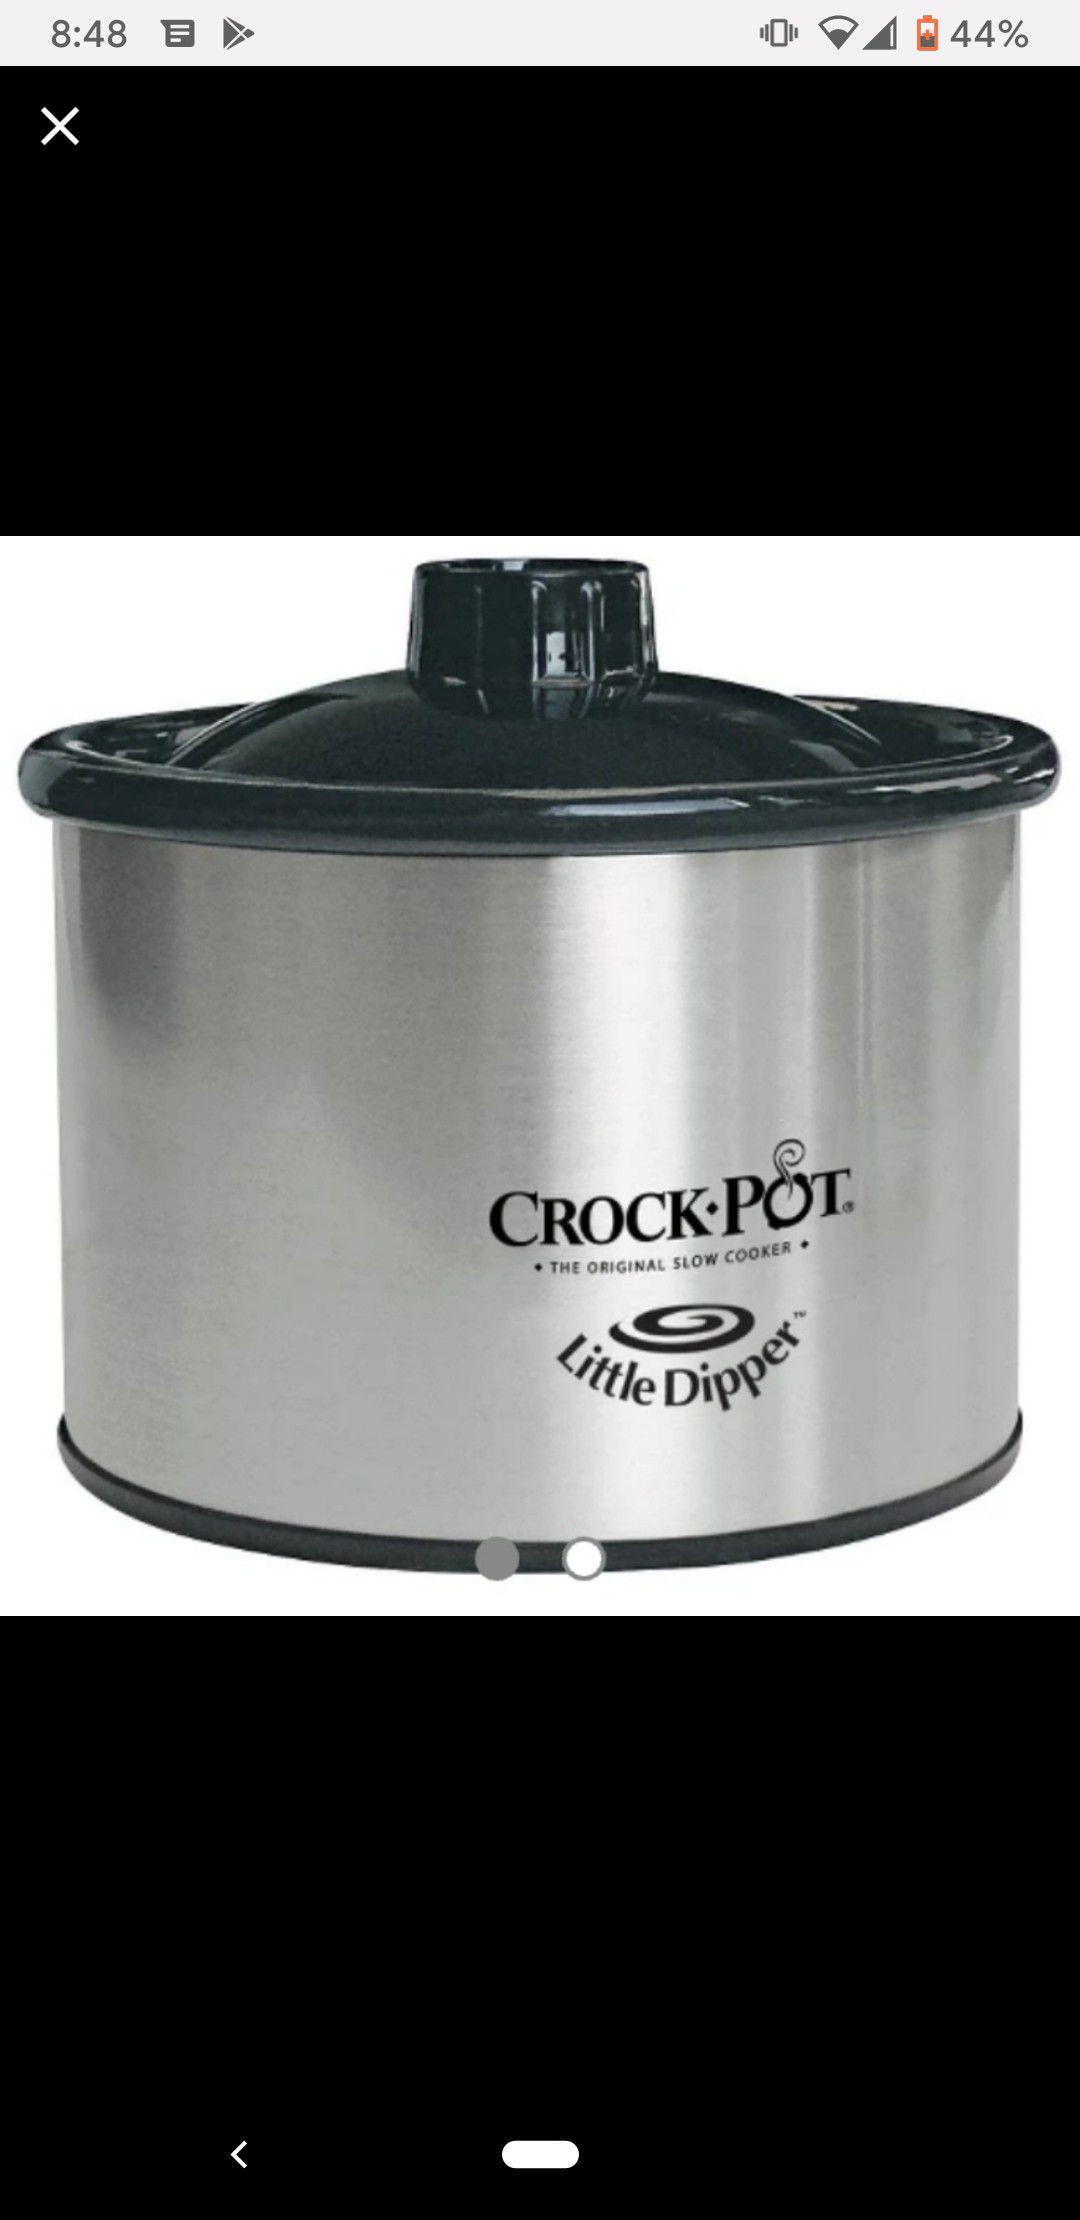 Crock Pot Little Dipper